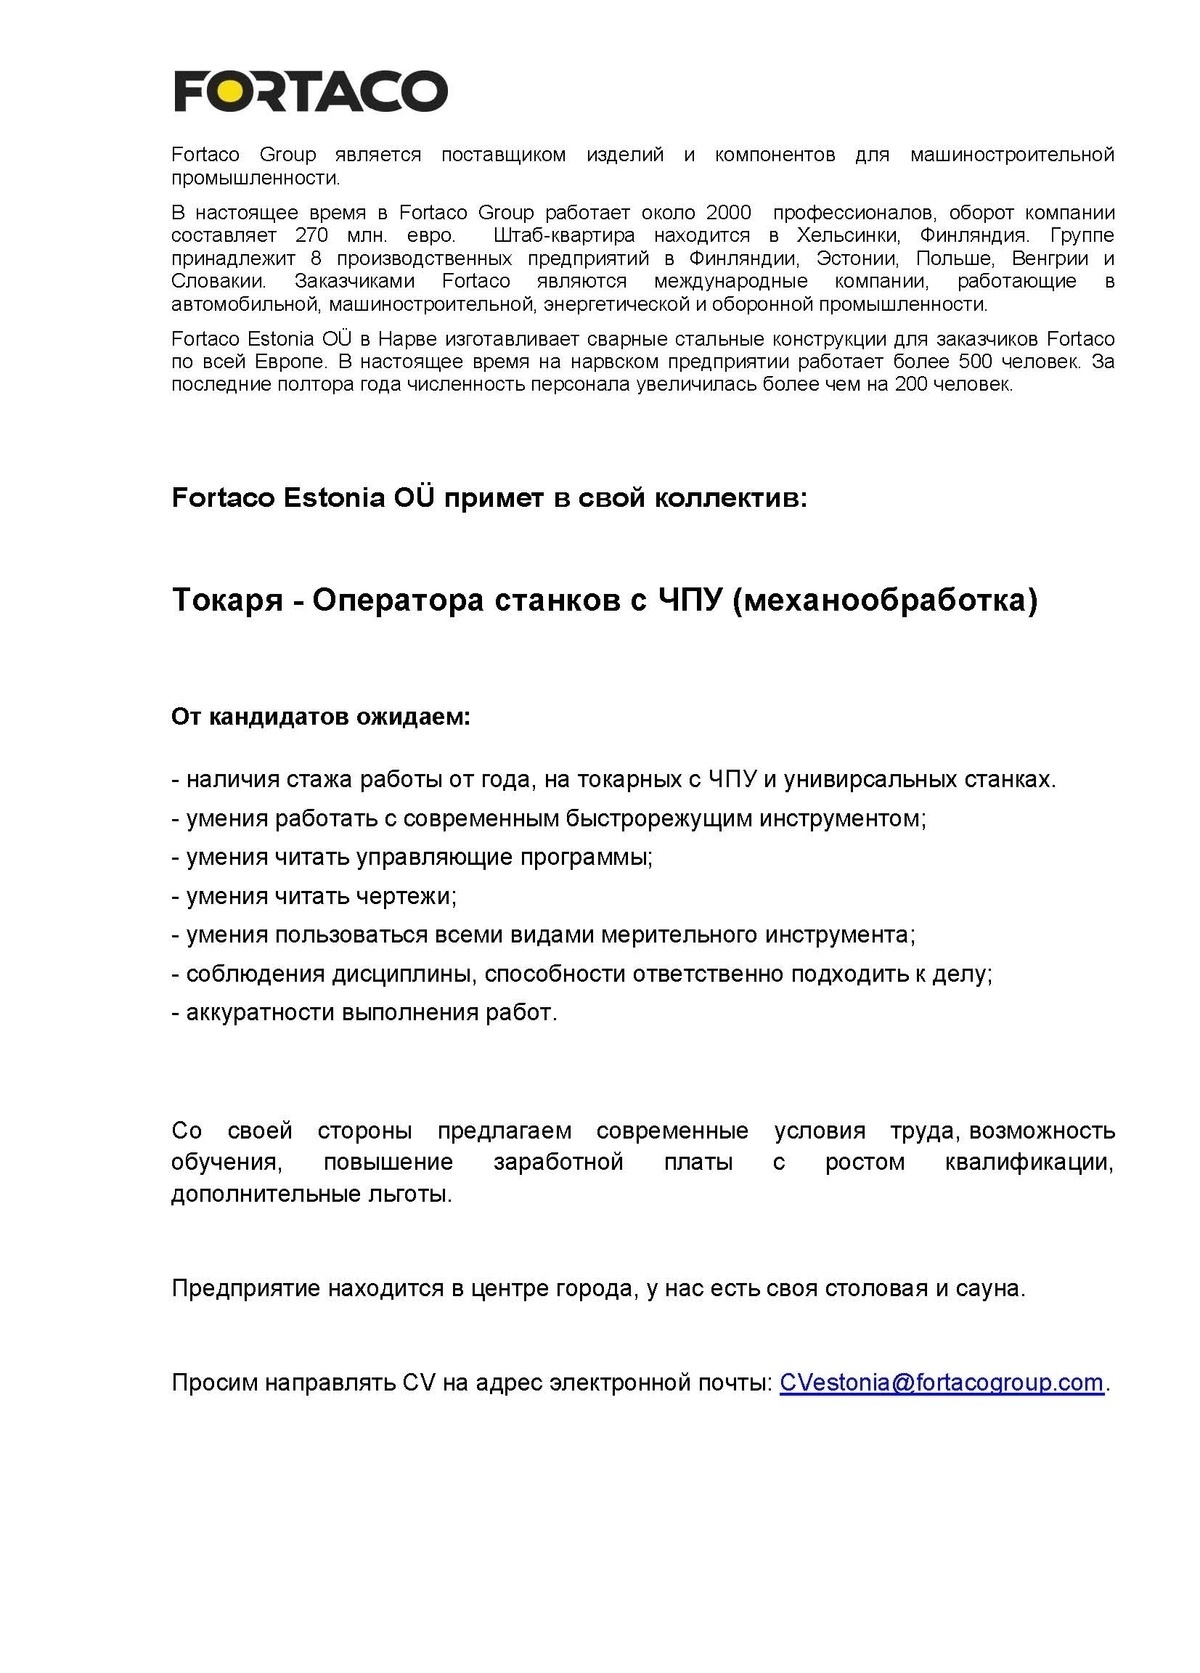 Fortaco Estonia OÜ Токарь-оператор станков с ЧПУ